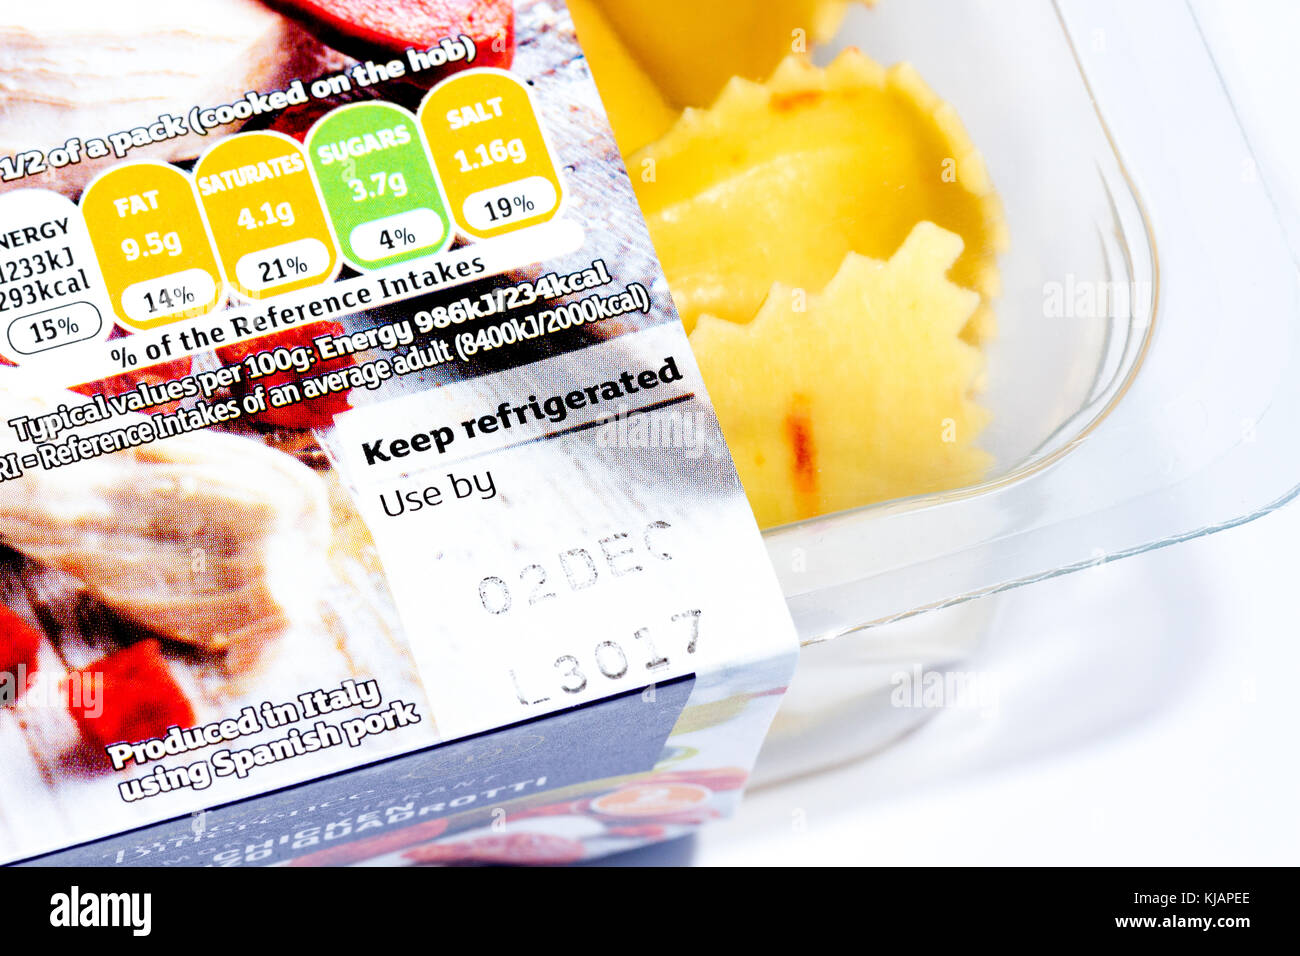 Date limite d'utilisation et l'information nutritionnelle feu système de cotation sur un paquet de Sainsburys's Goûtez la différence des pâtes au poulet et chorizo quadrotti Banque D'Images